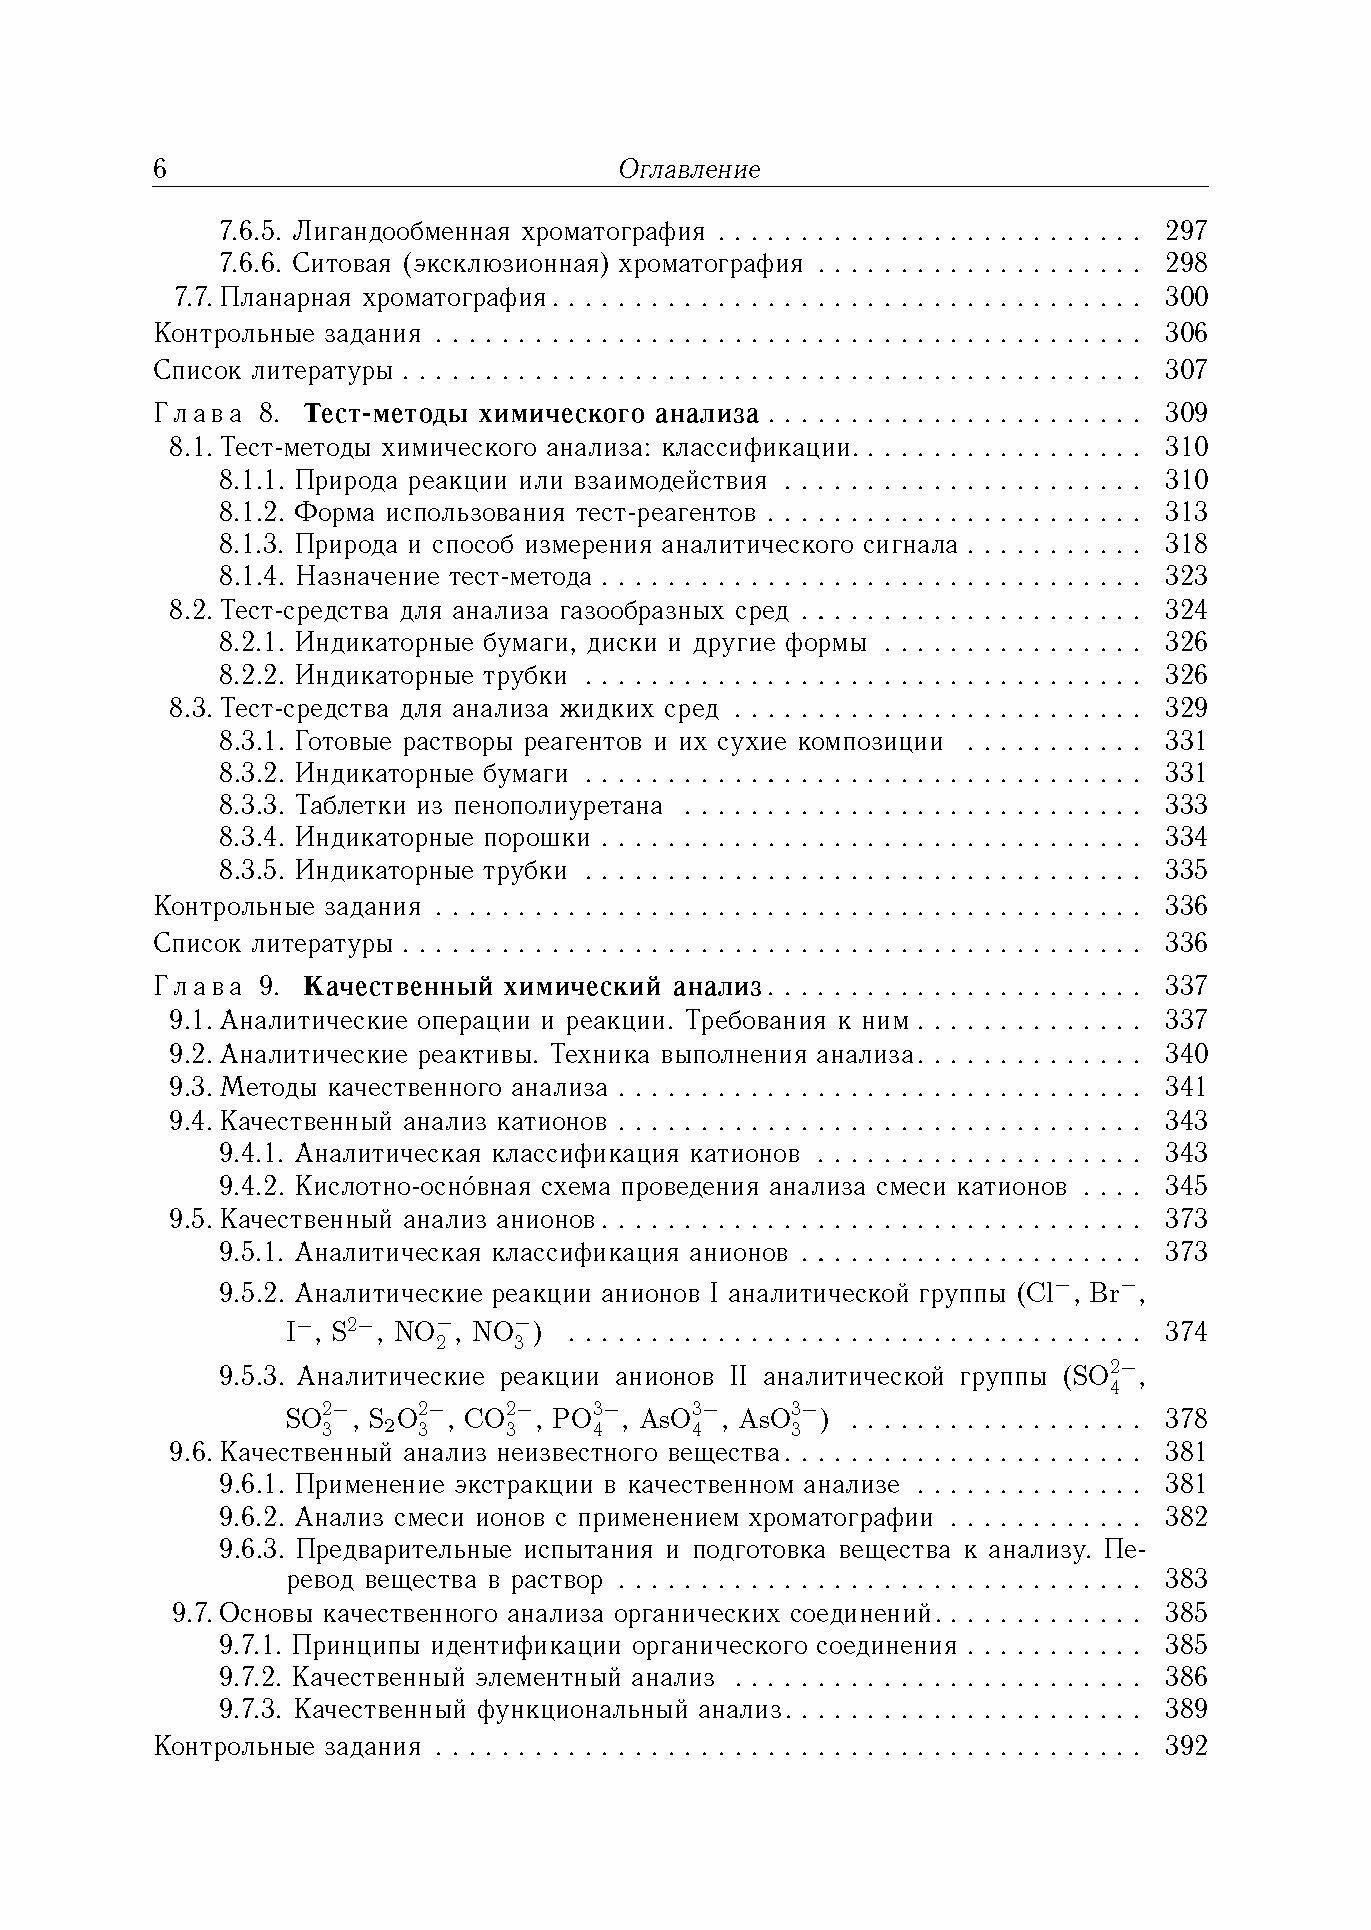 Аналитическая химия. В 3-х томах. Том 1. Химические методы анализа - фото №4